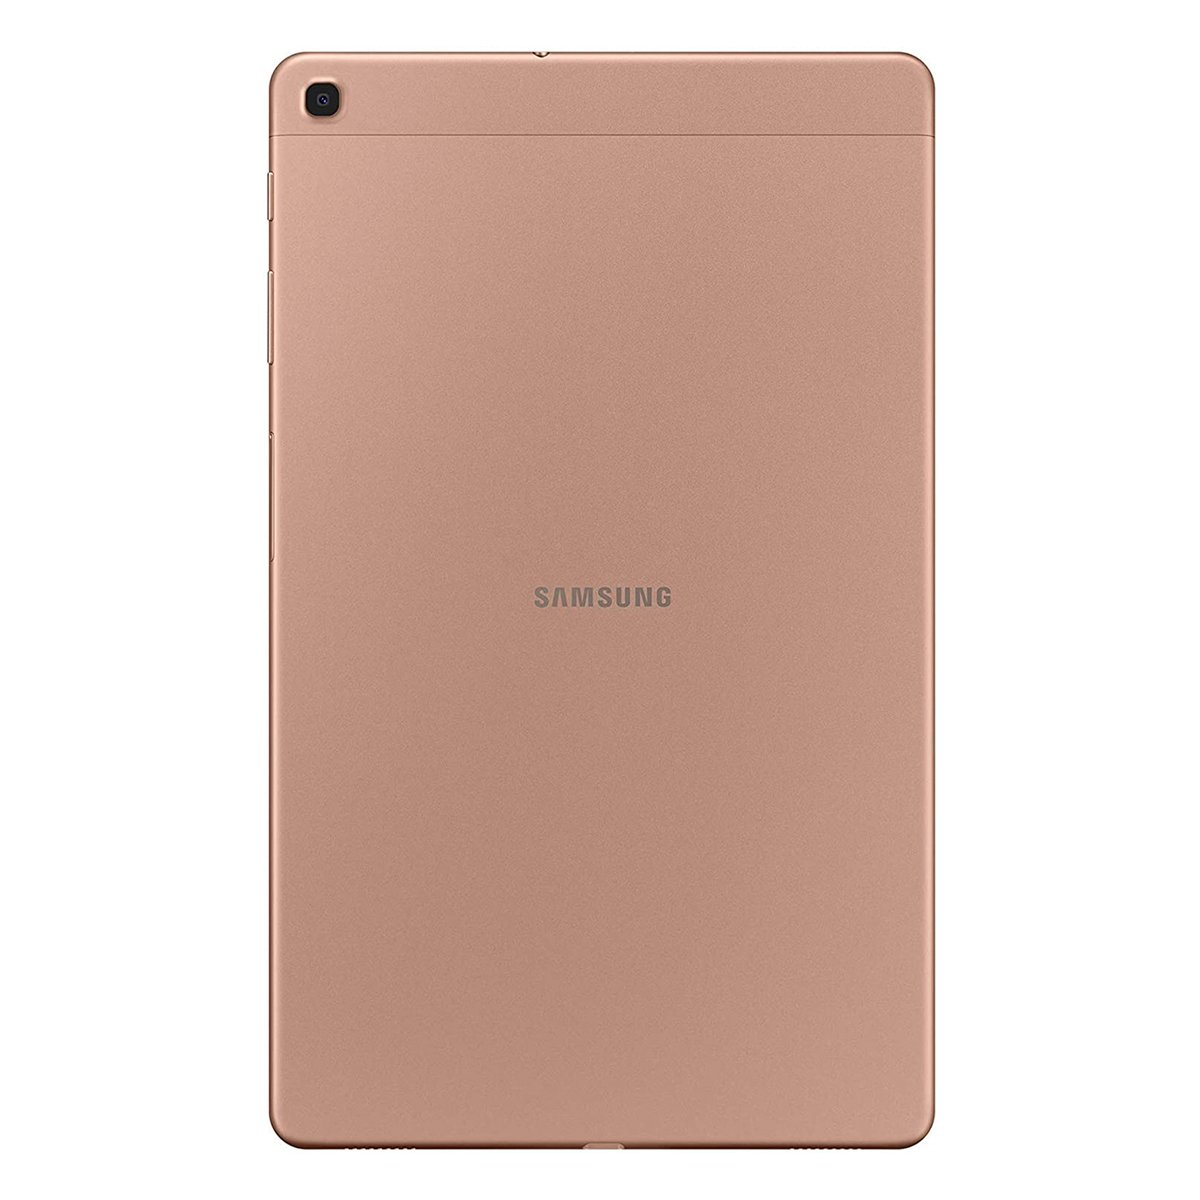 Samsung Galaxy TabA-SMT510N 32GB,10.1" ,Wifi,Gold